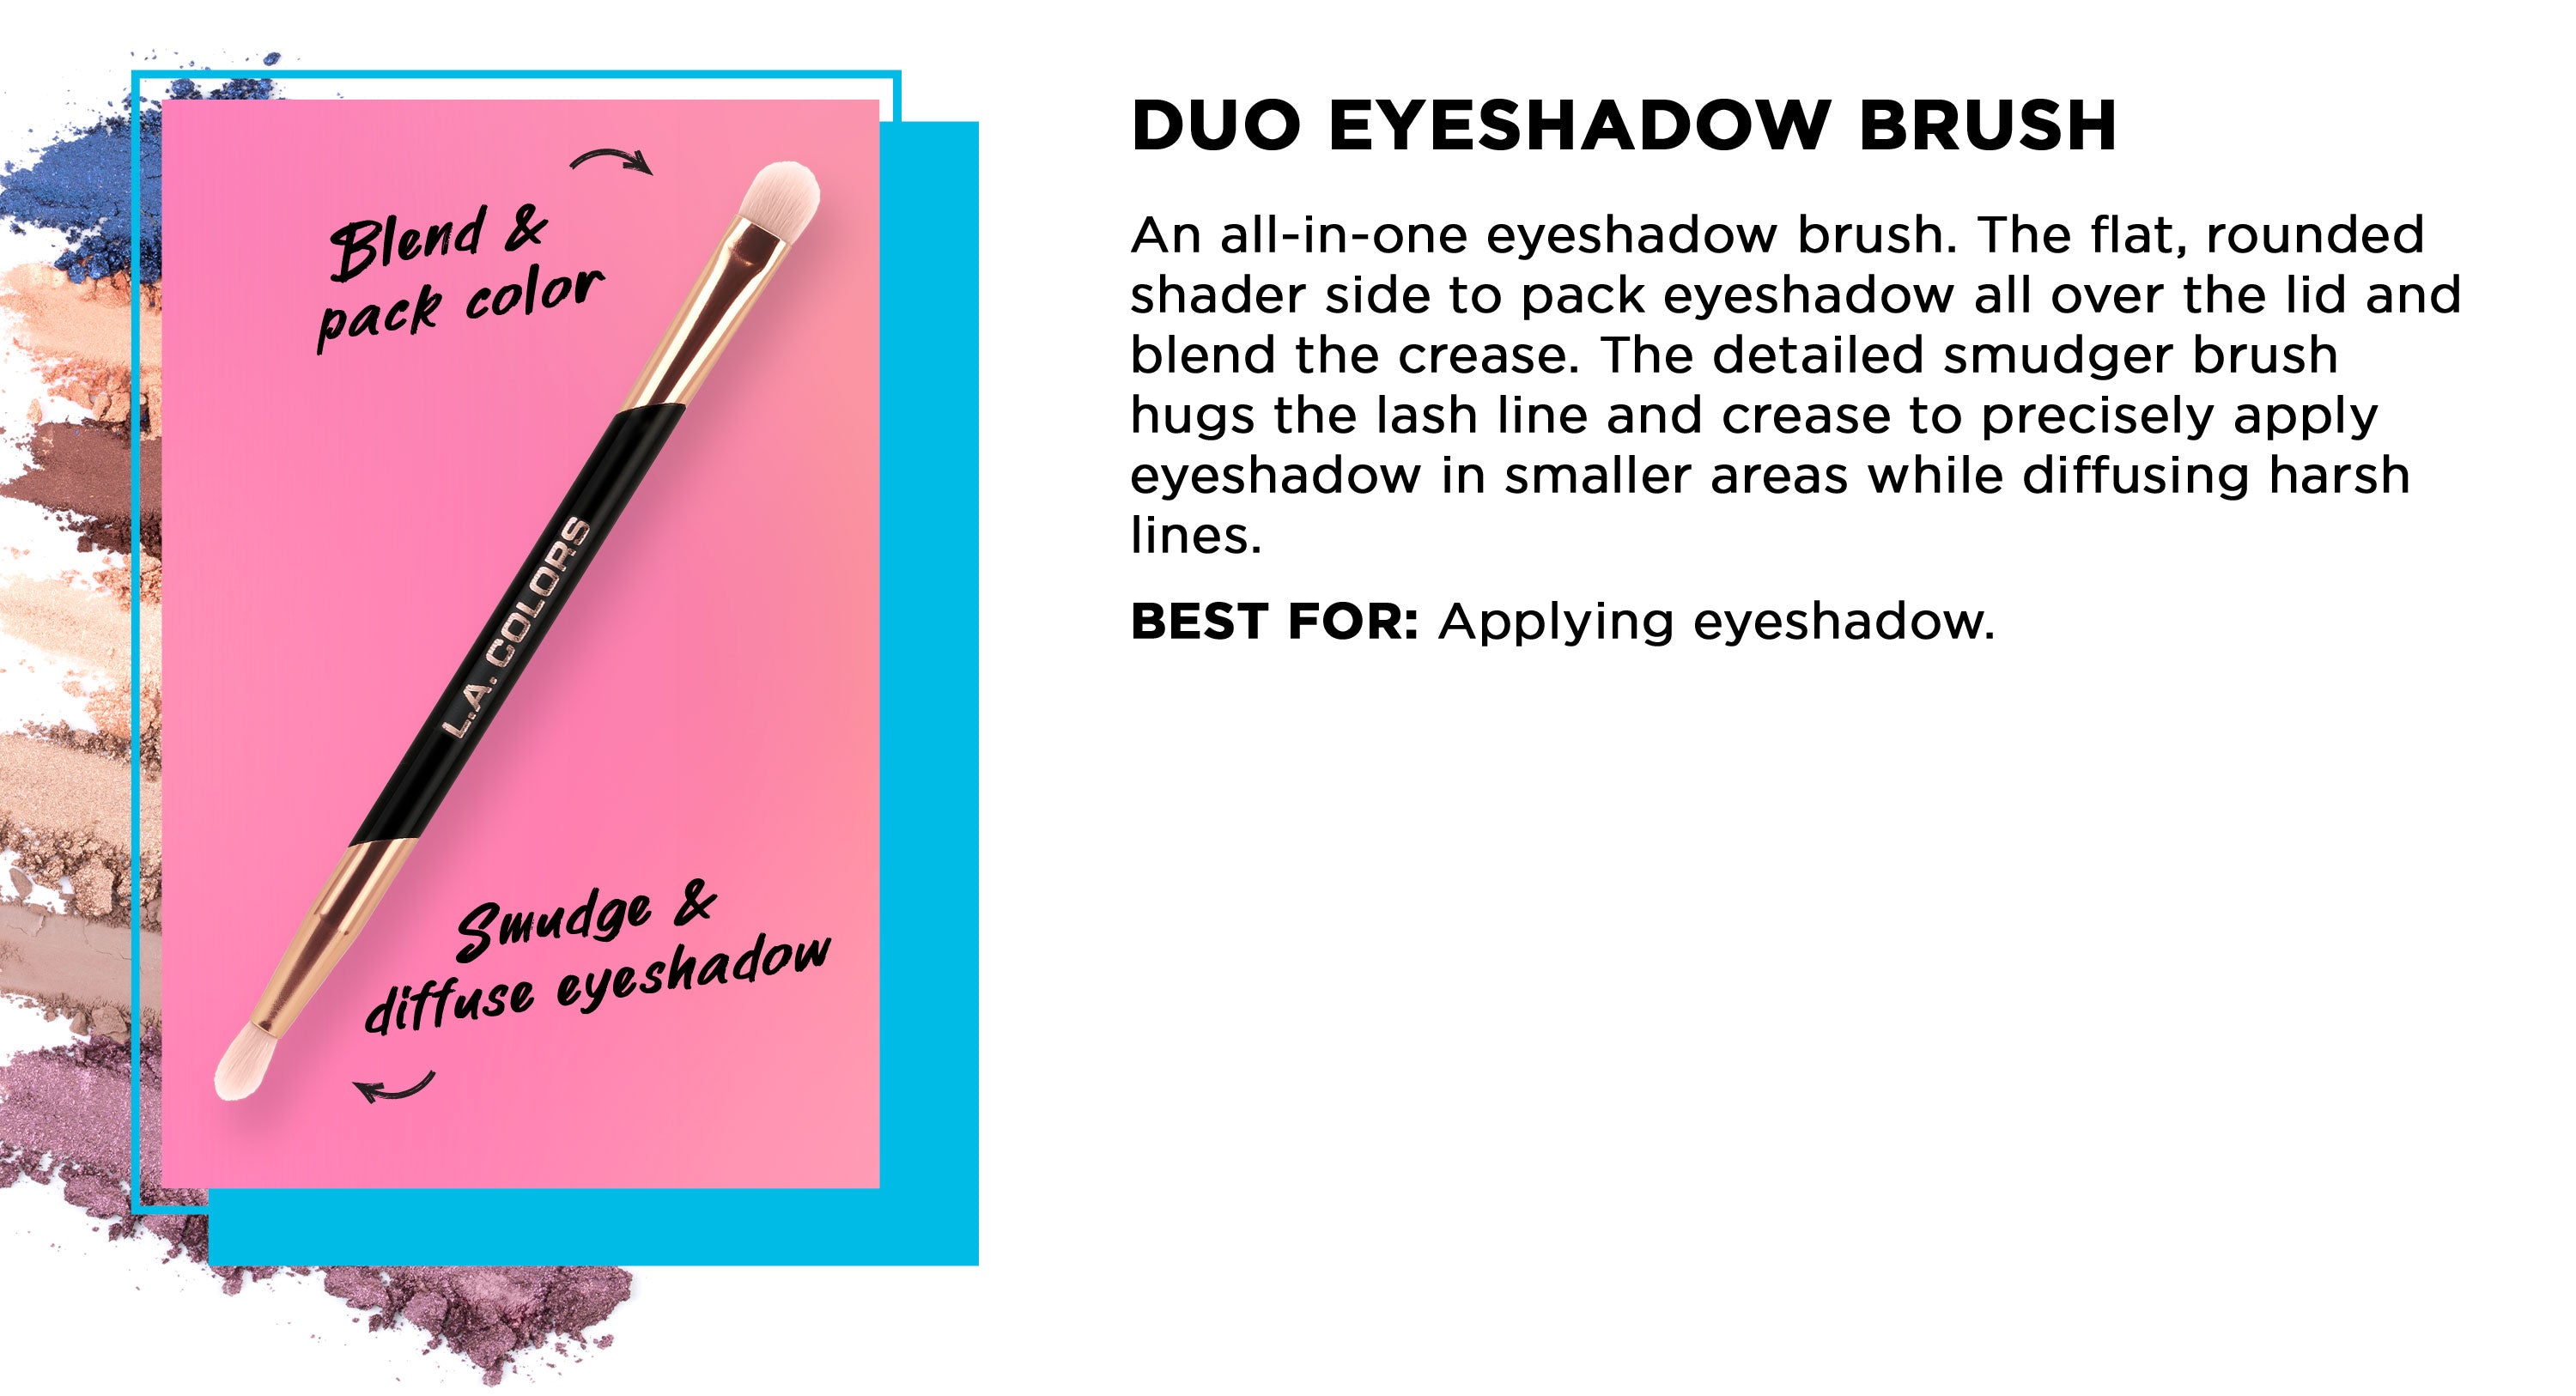 Duo Eyeshadow Brush